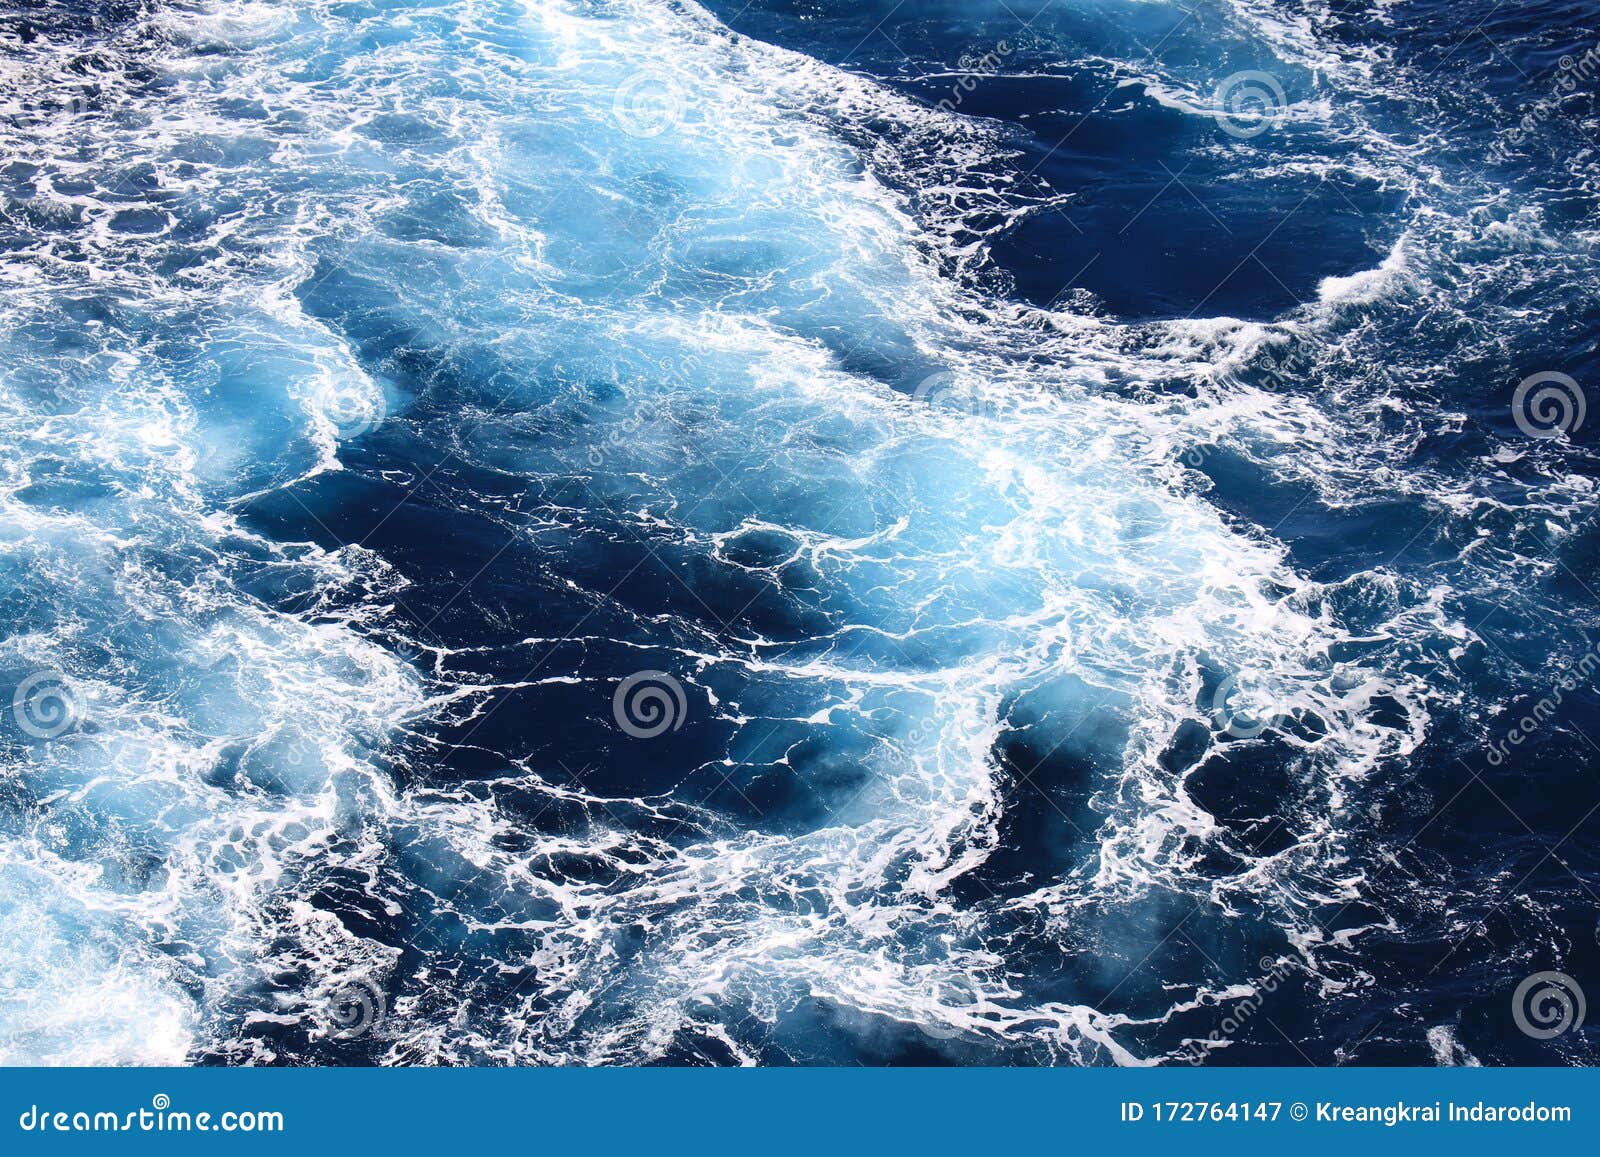 Foamy Ocean Poster - Ocean foam 